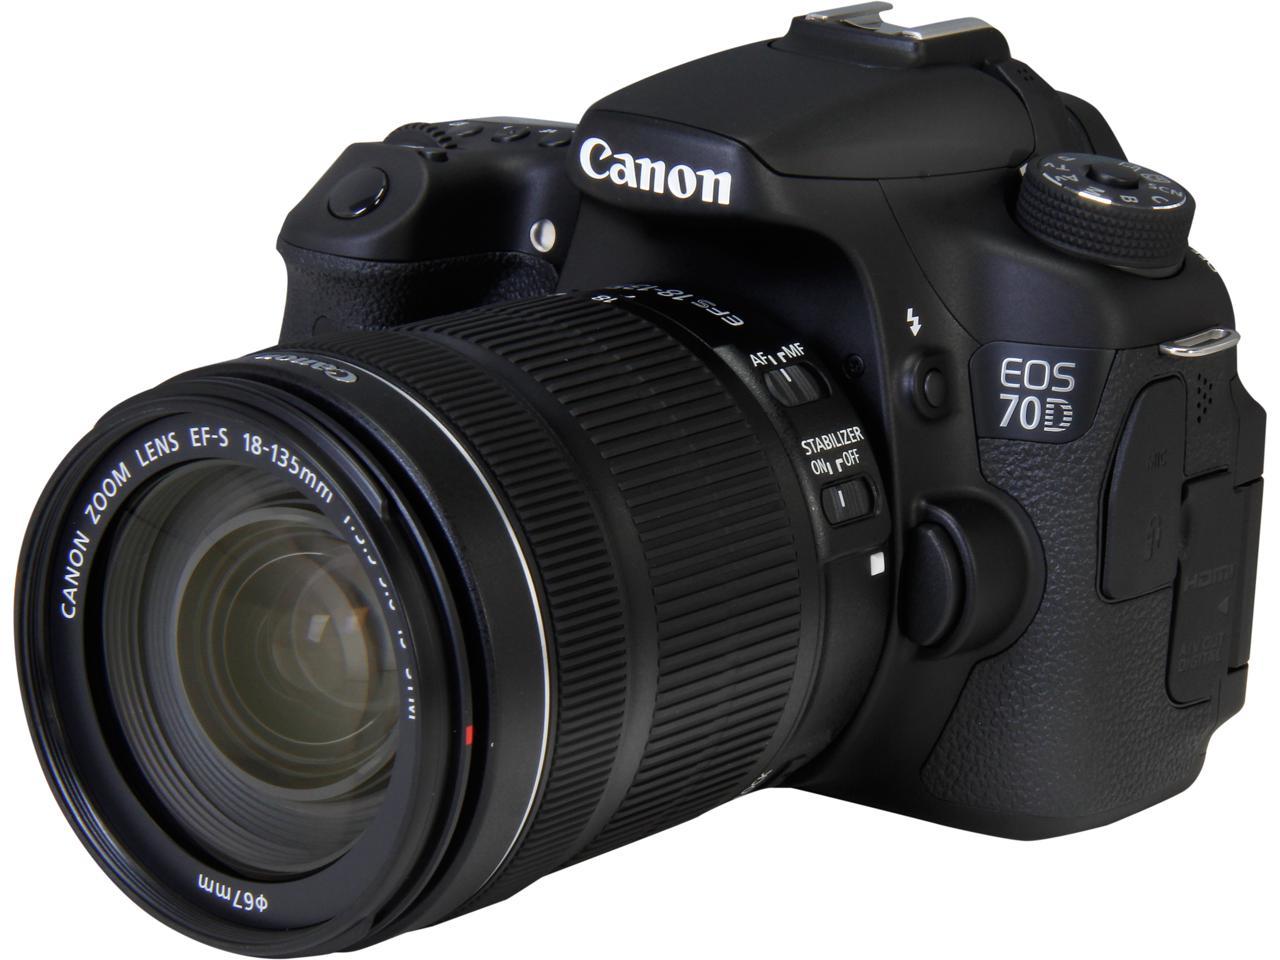 Canon EOS 70D (8469B016) Digital SLR Cameras Black Digital SLR Camera ...